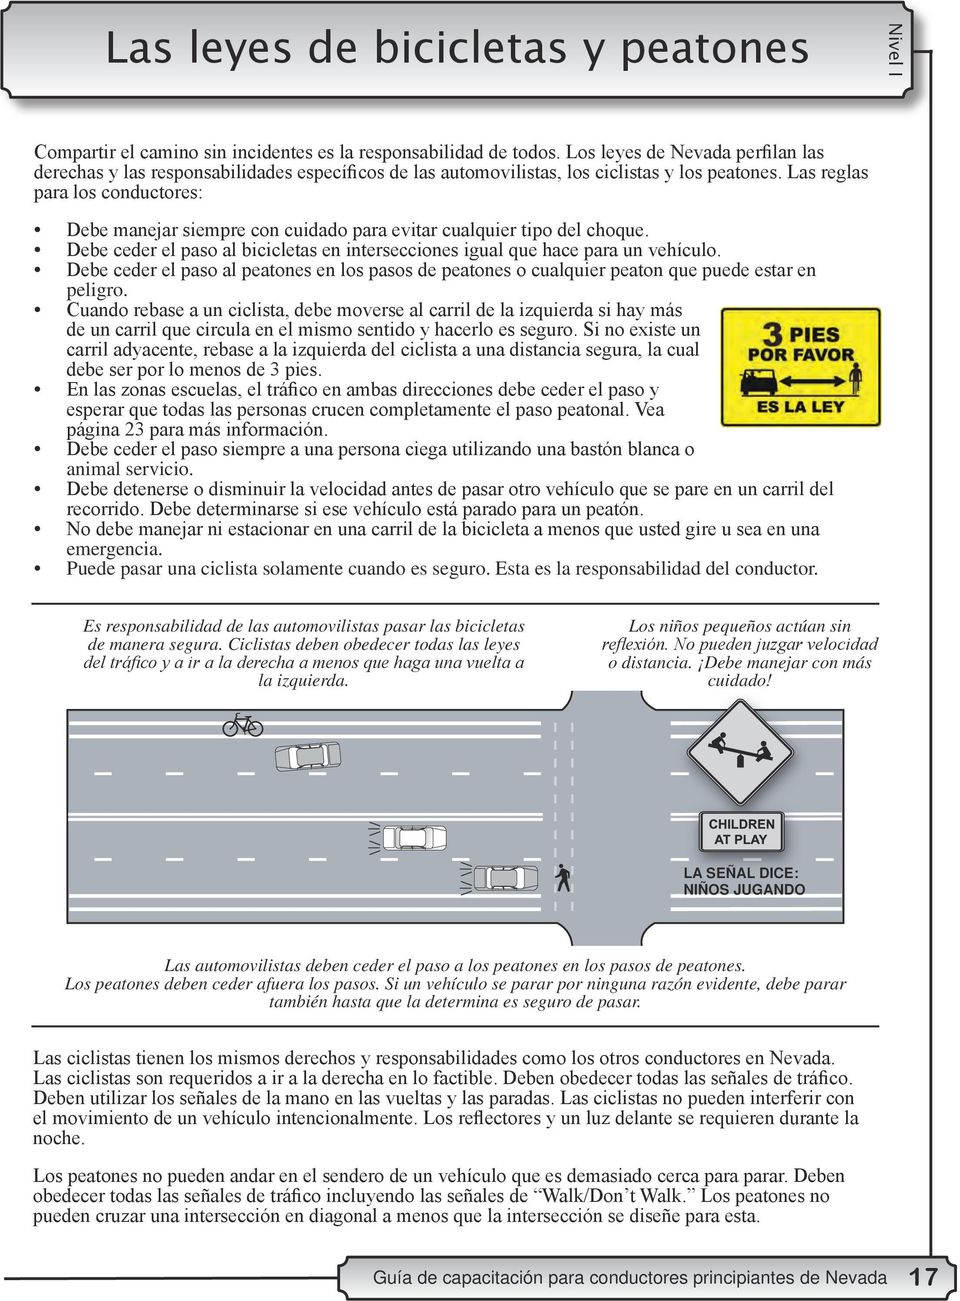 Las reglas para los conductores: Debe manejar siempre con cuidado para evitar cualquier tipo del choque. Debe ceder el paso al bicicletas en intersecciones igual que hace para un vehículo.